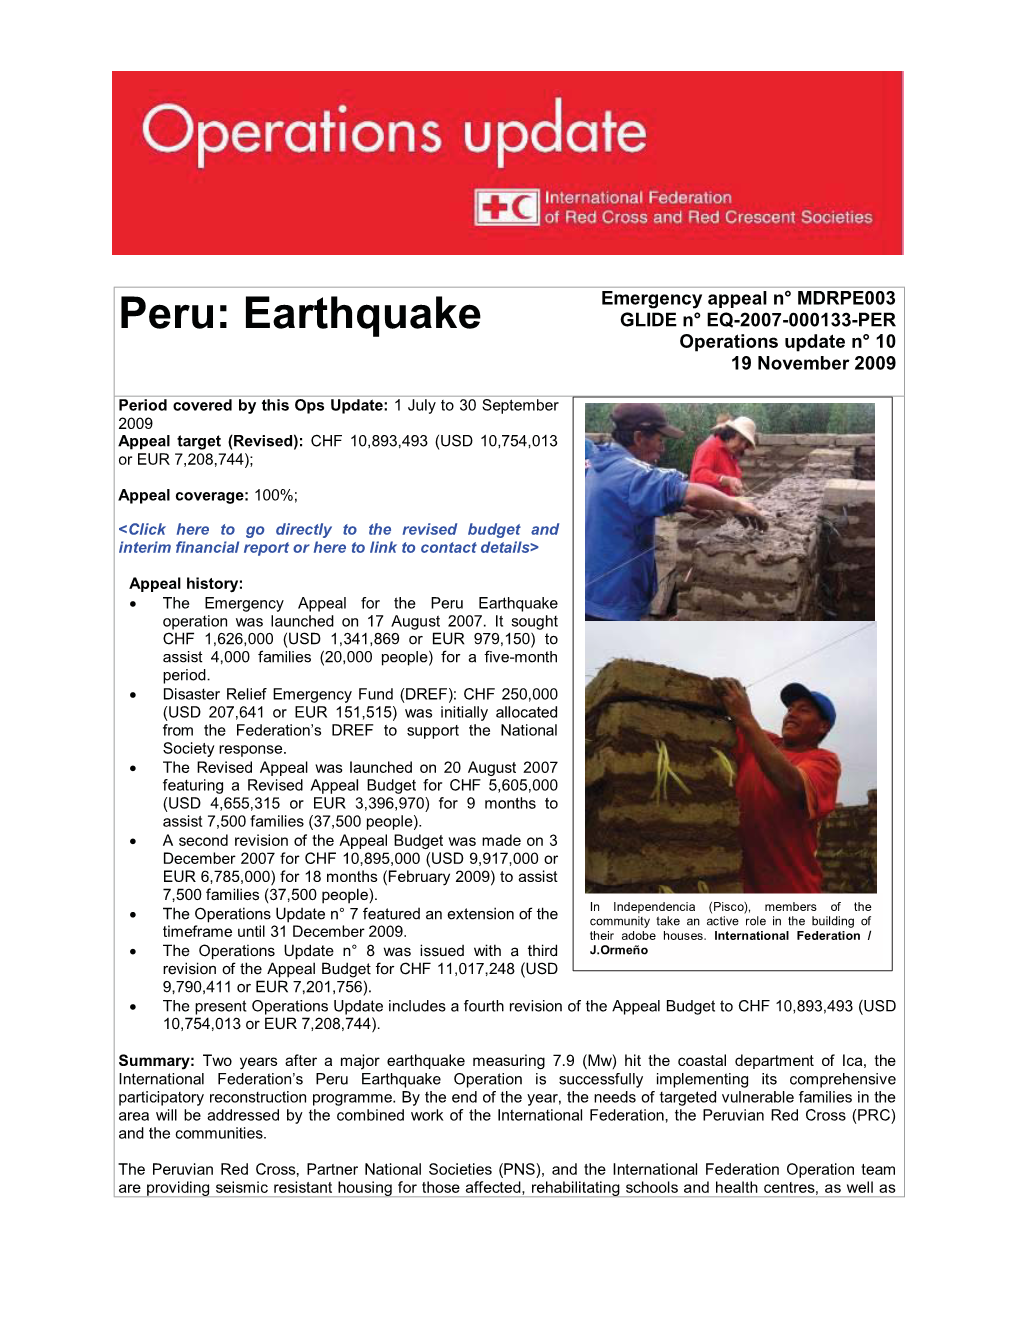 Peru: Earthquake GLIDE N° EQ-2007-000133-PER Operations Update N° 10 19 November 2009